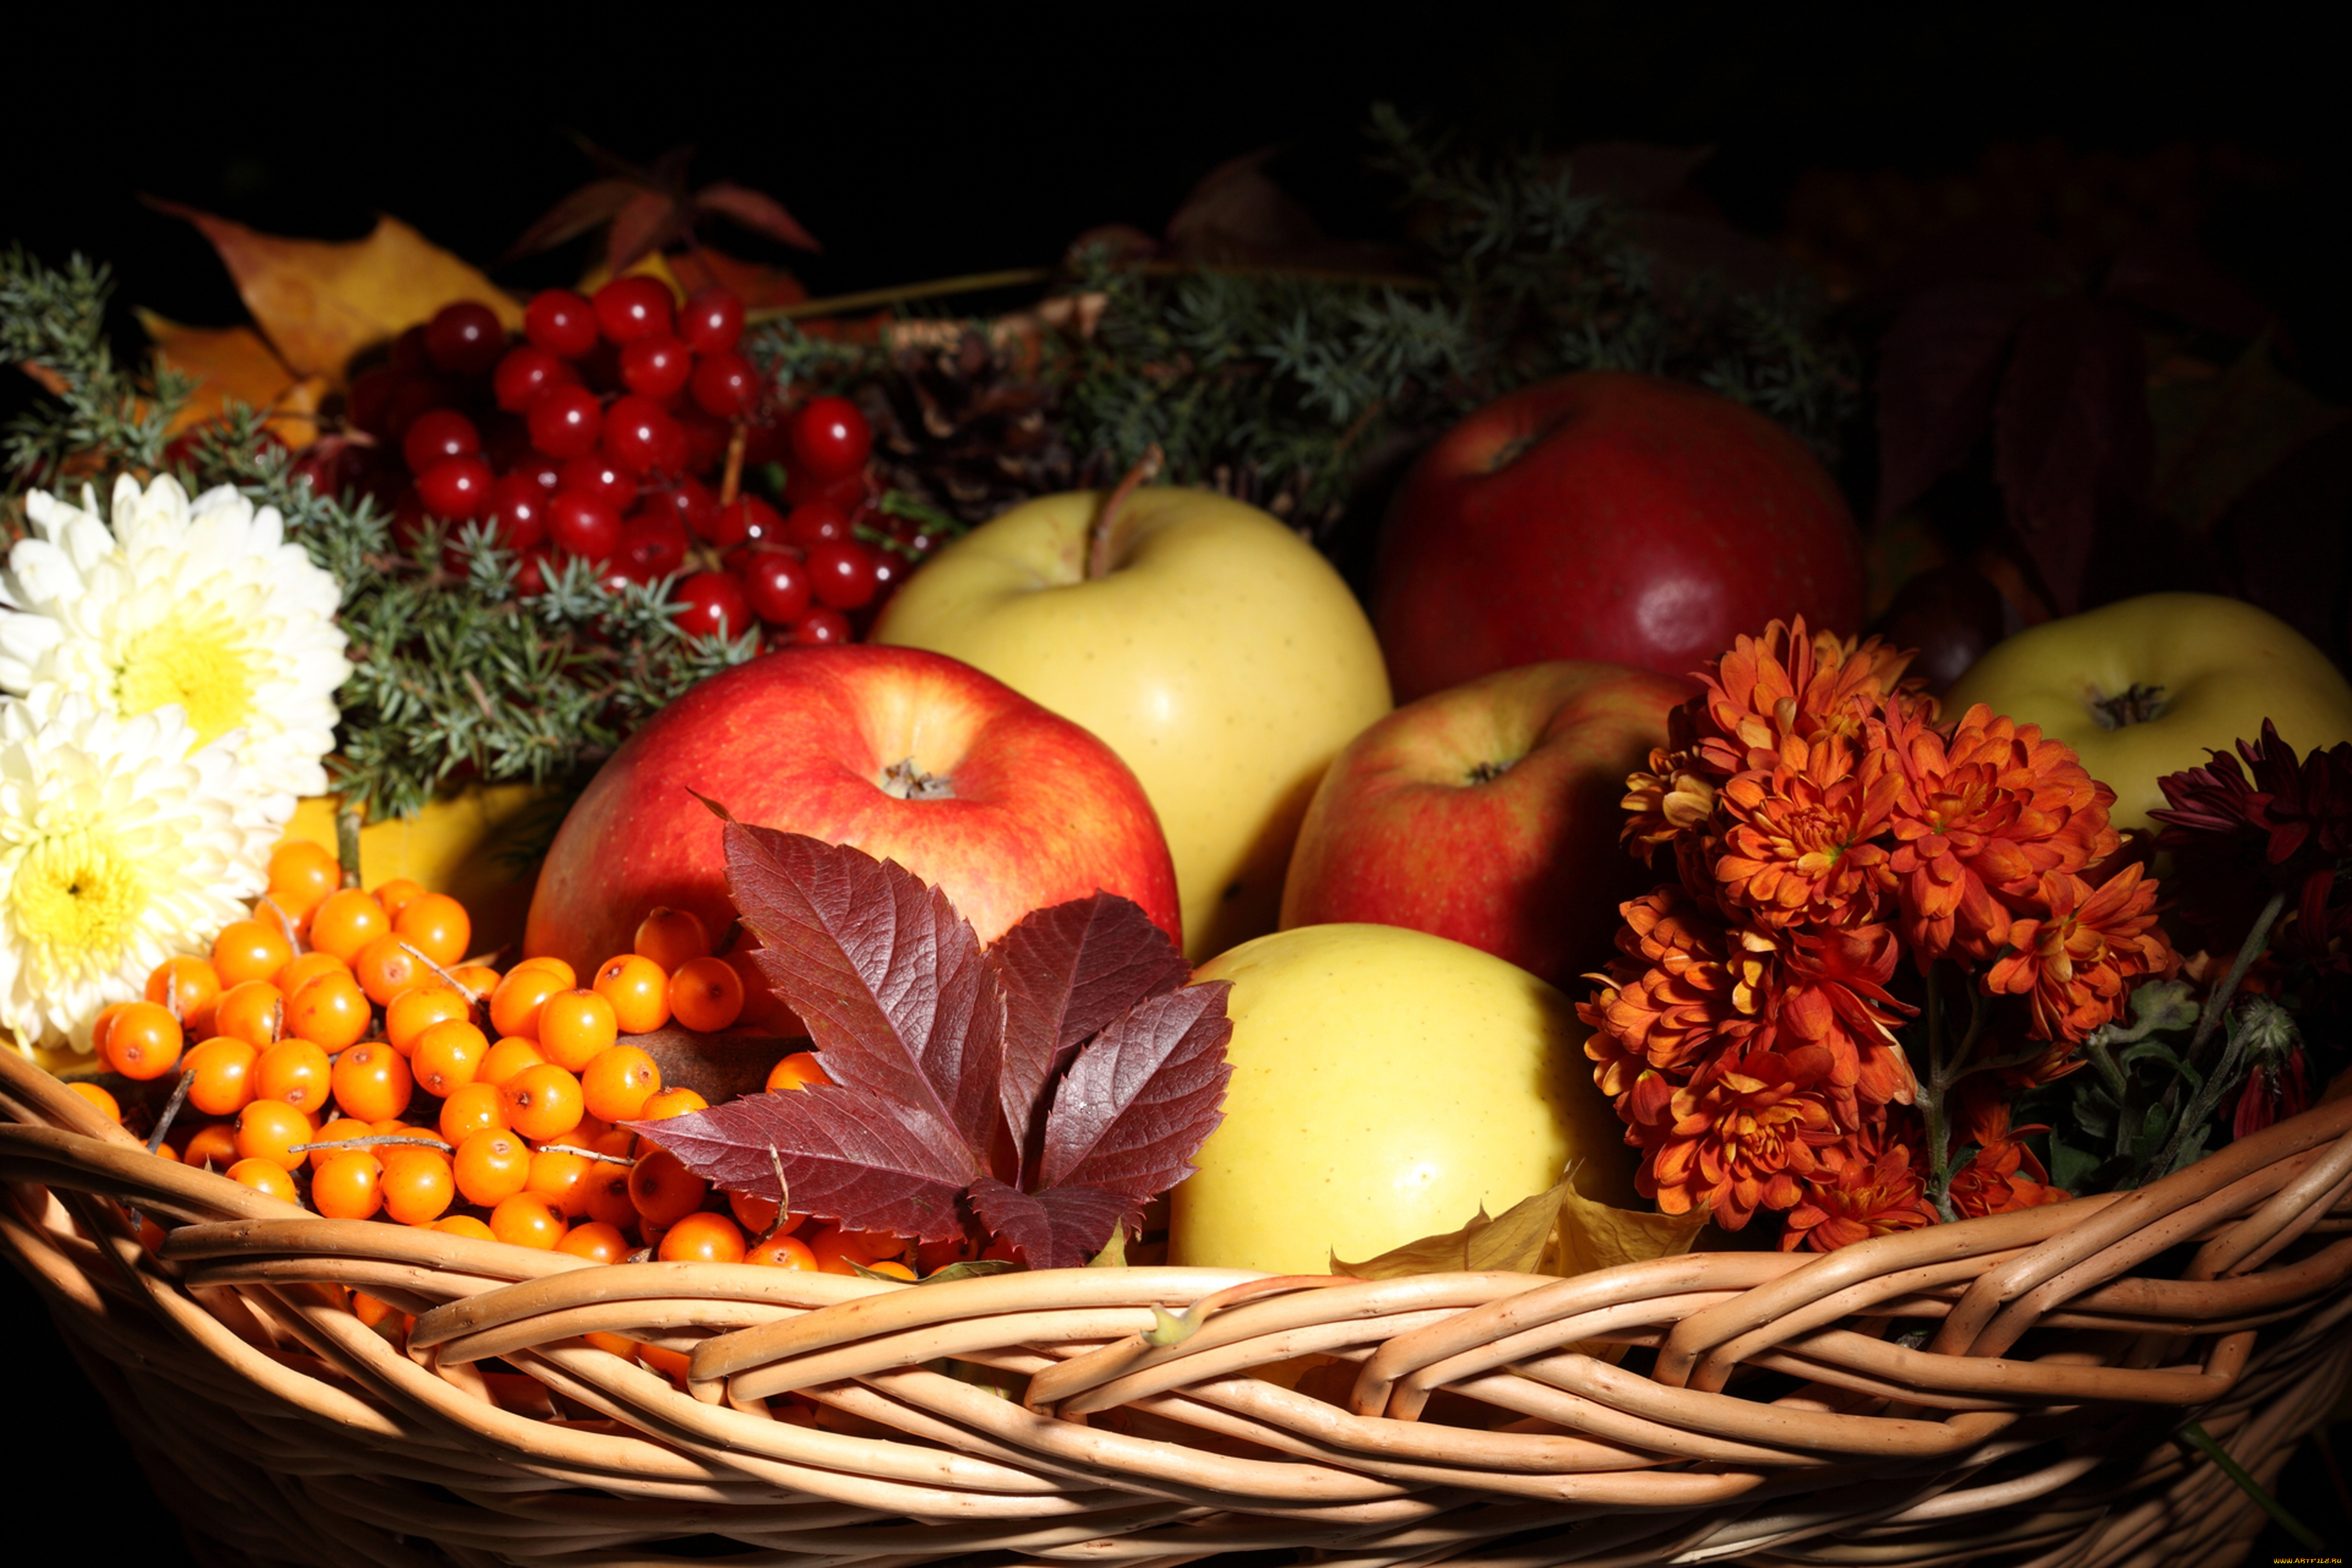 еда, фрукты, ягоды, яблоки, рябина